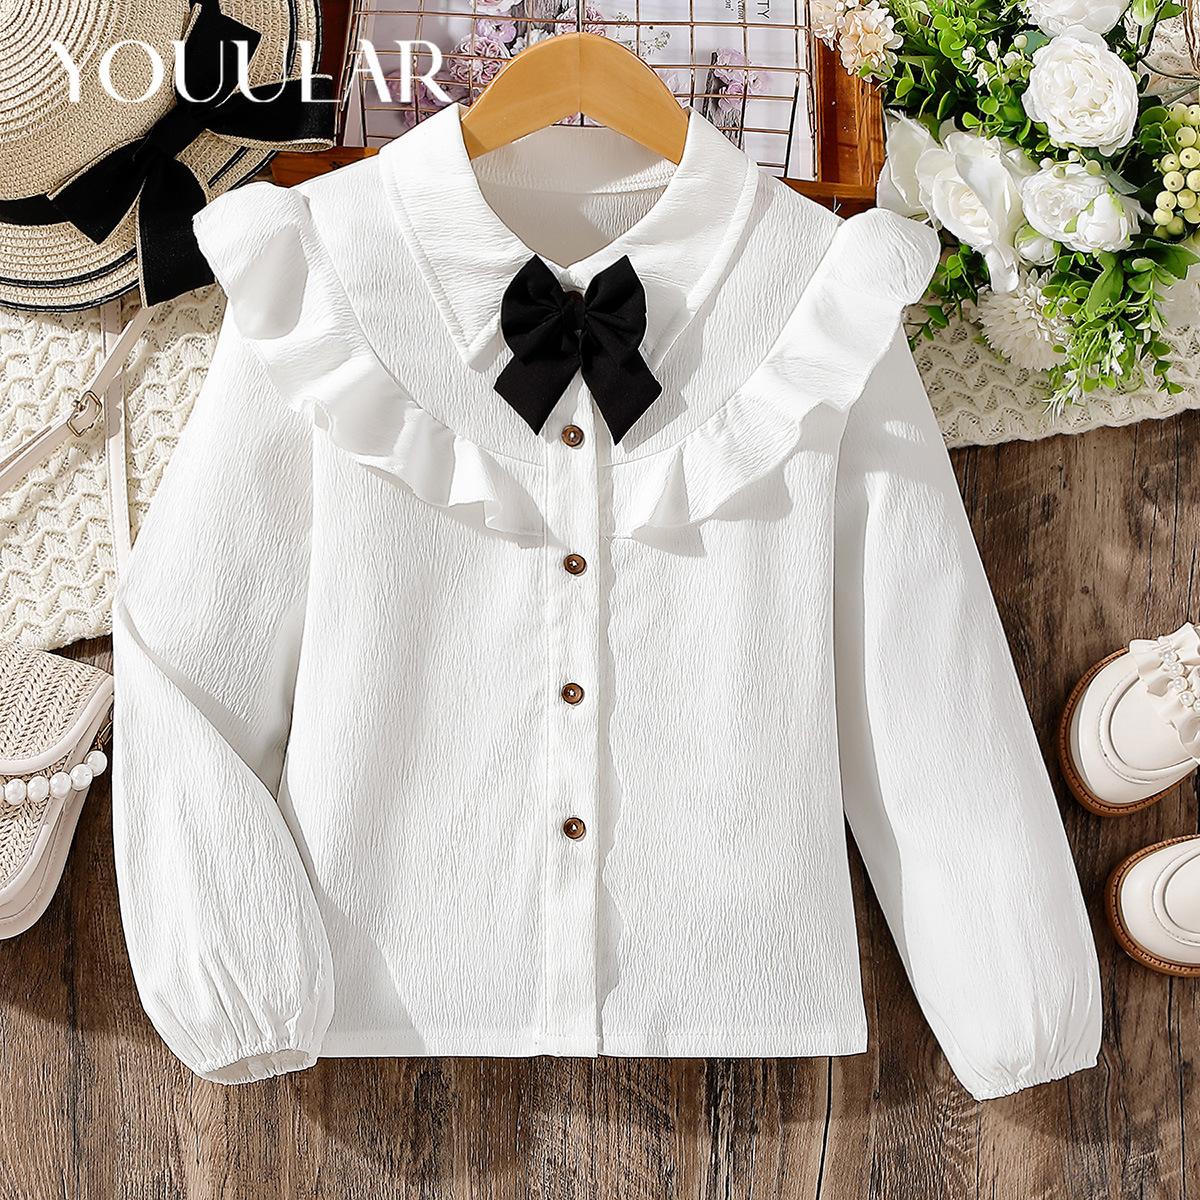 SUPER BABY1 Witte blouse voor grote meisjes Ruche mouwen Tops Zwarte strikoverhemden Meisjes tienerkleding Schooluniform Herfst witte tops